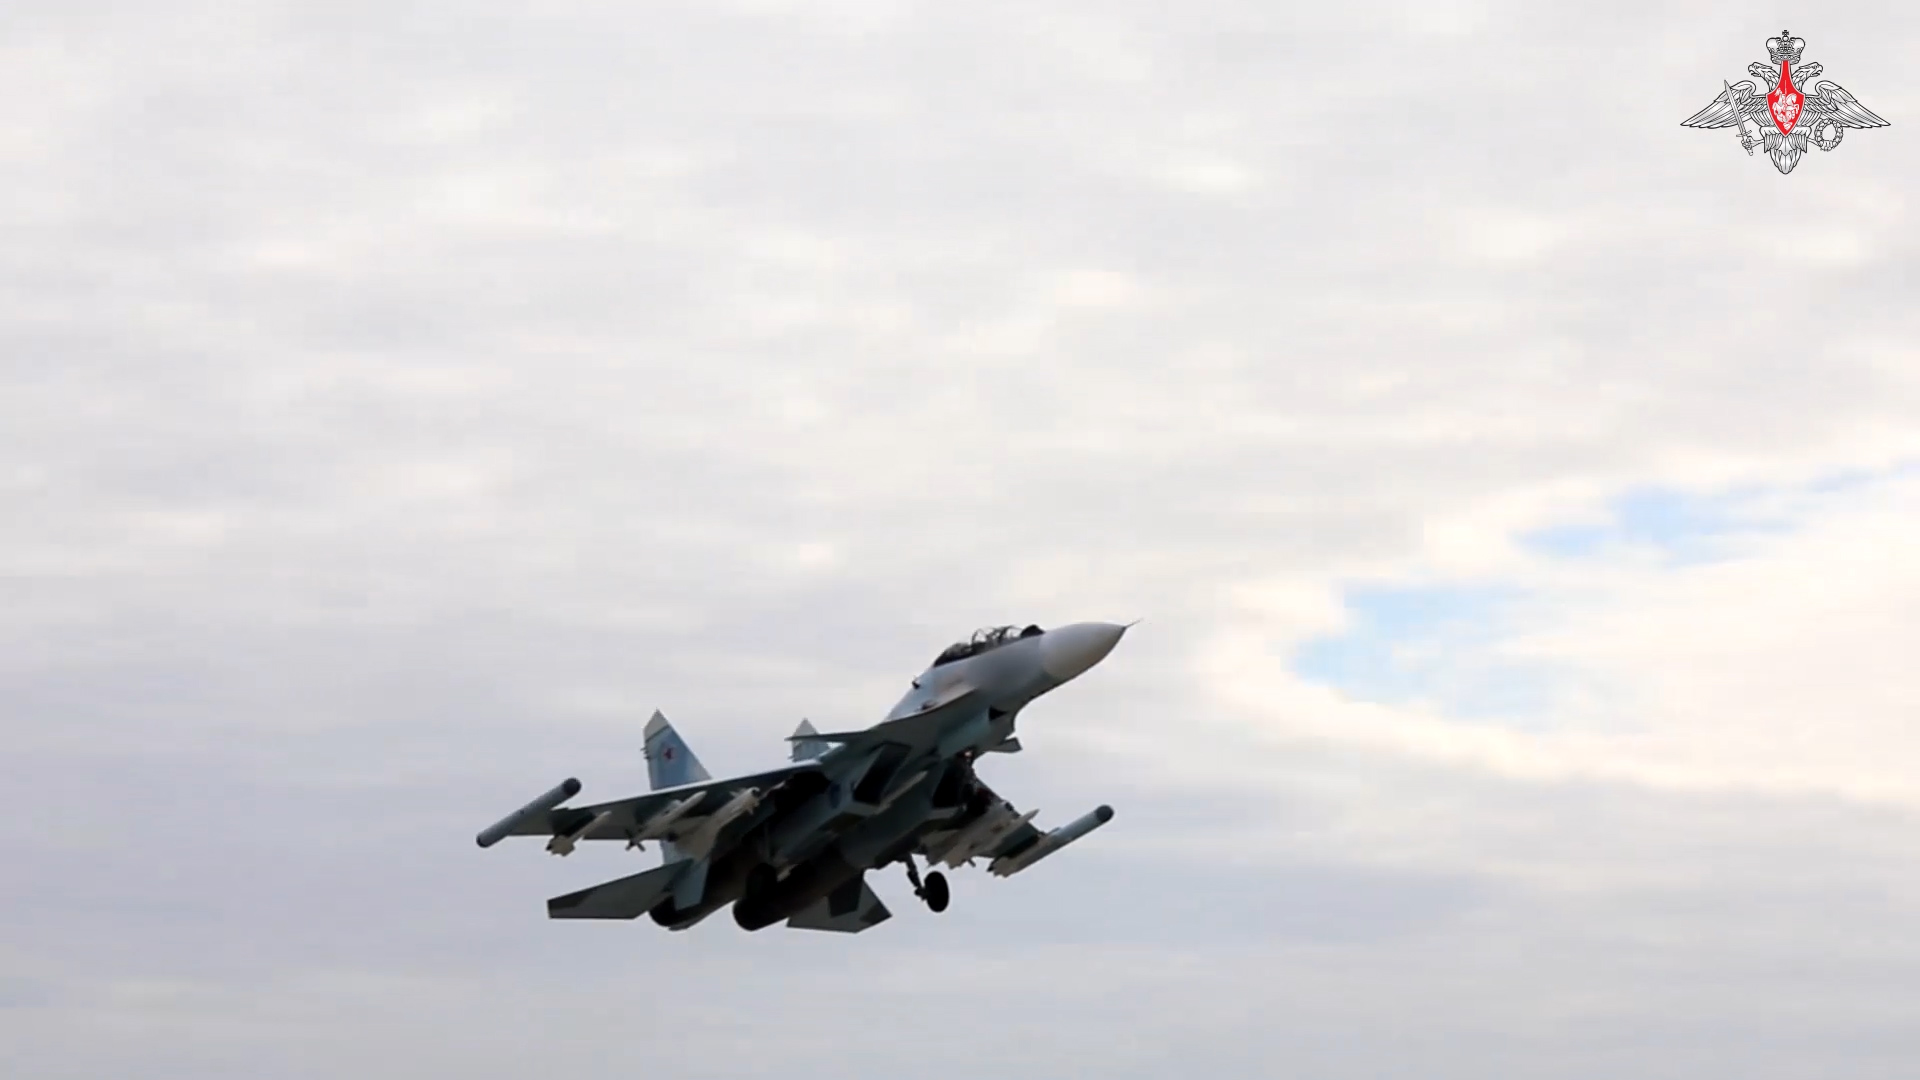 اوكرانيا _ الدفاع الروسية تنشر فيديو يُظهر بعض اللقطات لتشغيل طائرات Su-30SM وSu-35S أثناء العمل.00_00_42_01.Still001